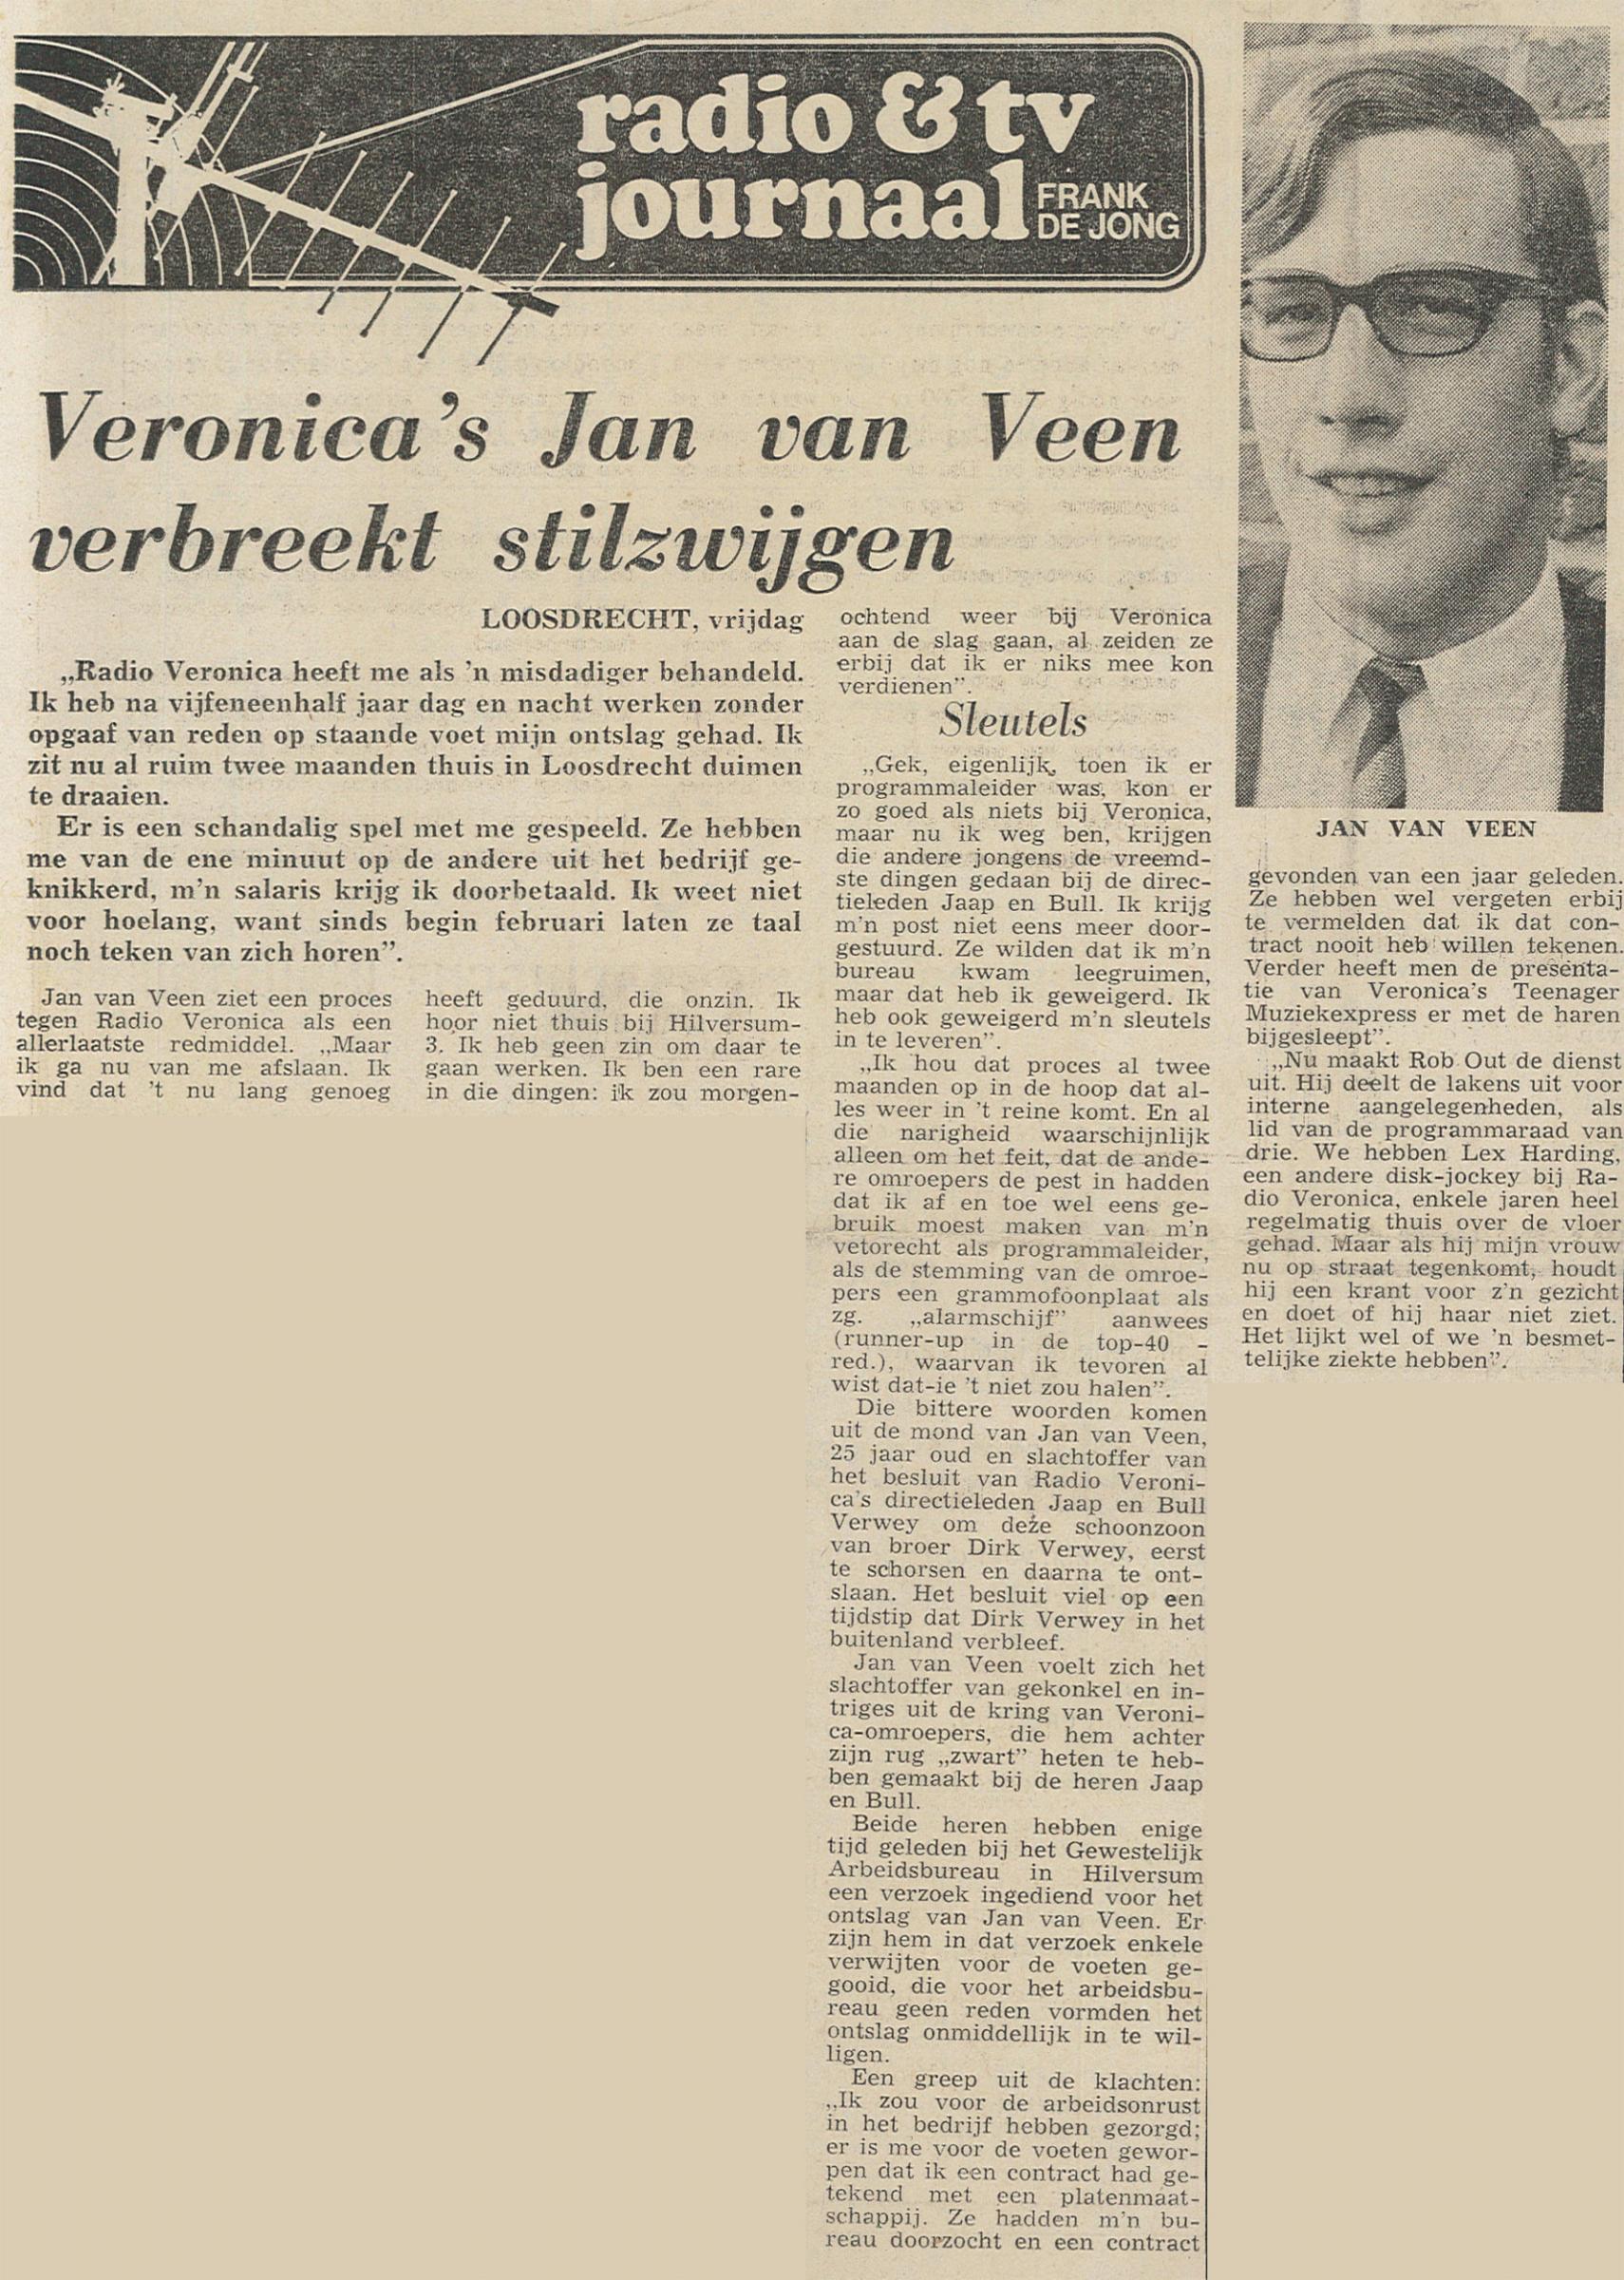 19700417 Tel Jan van Veen verbreekt stilzwijgen.jpg